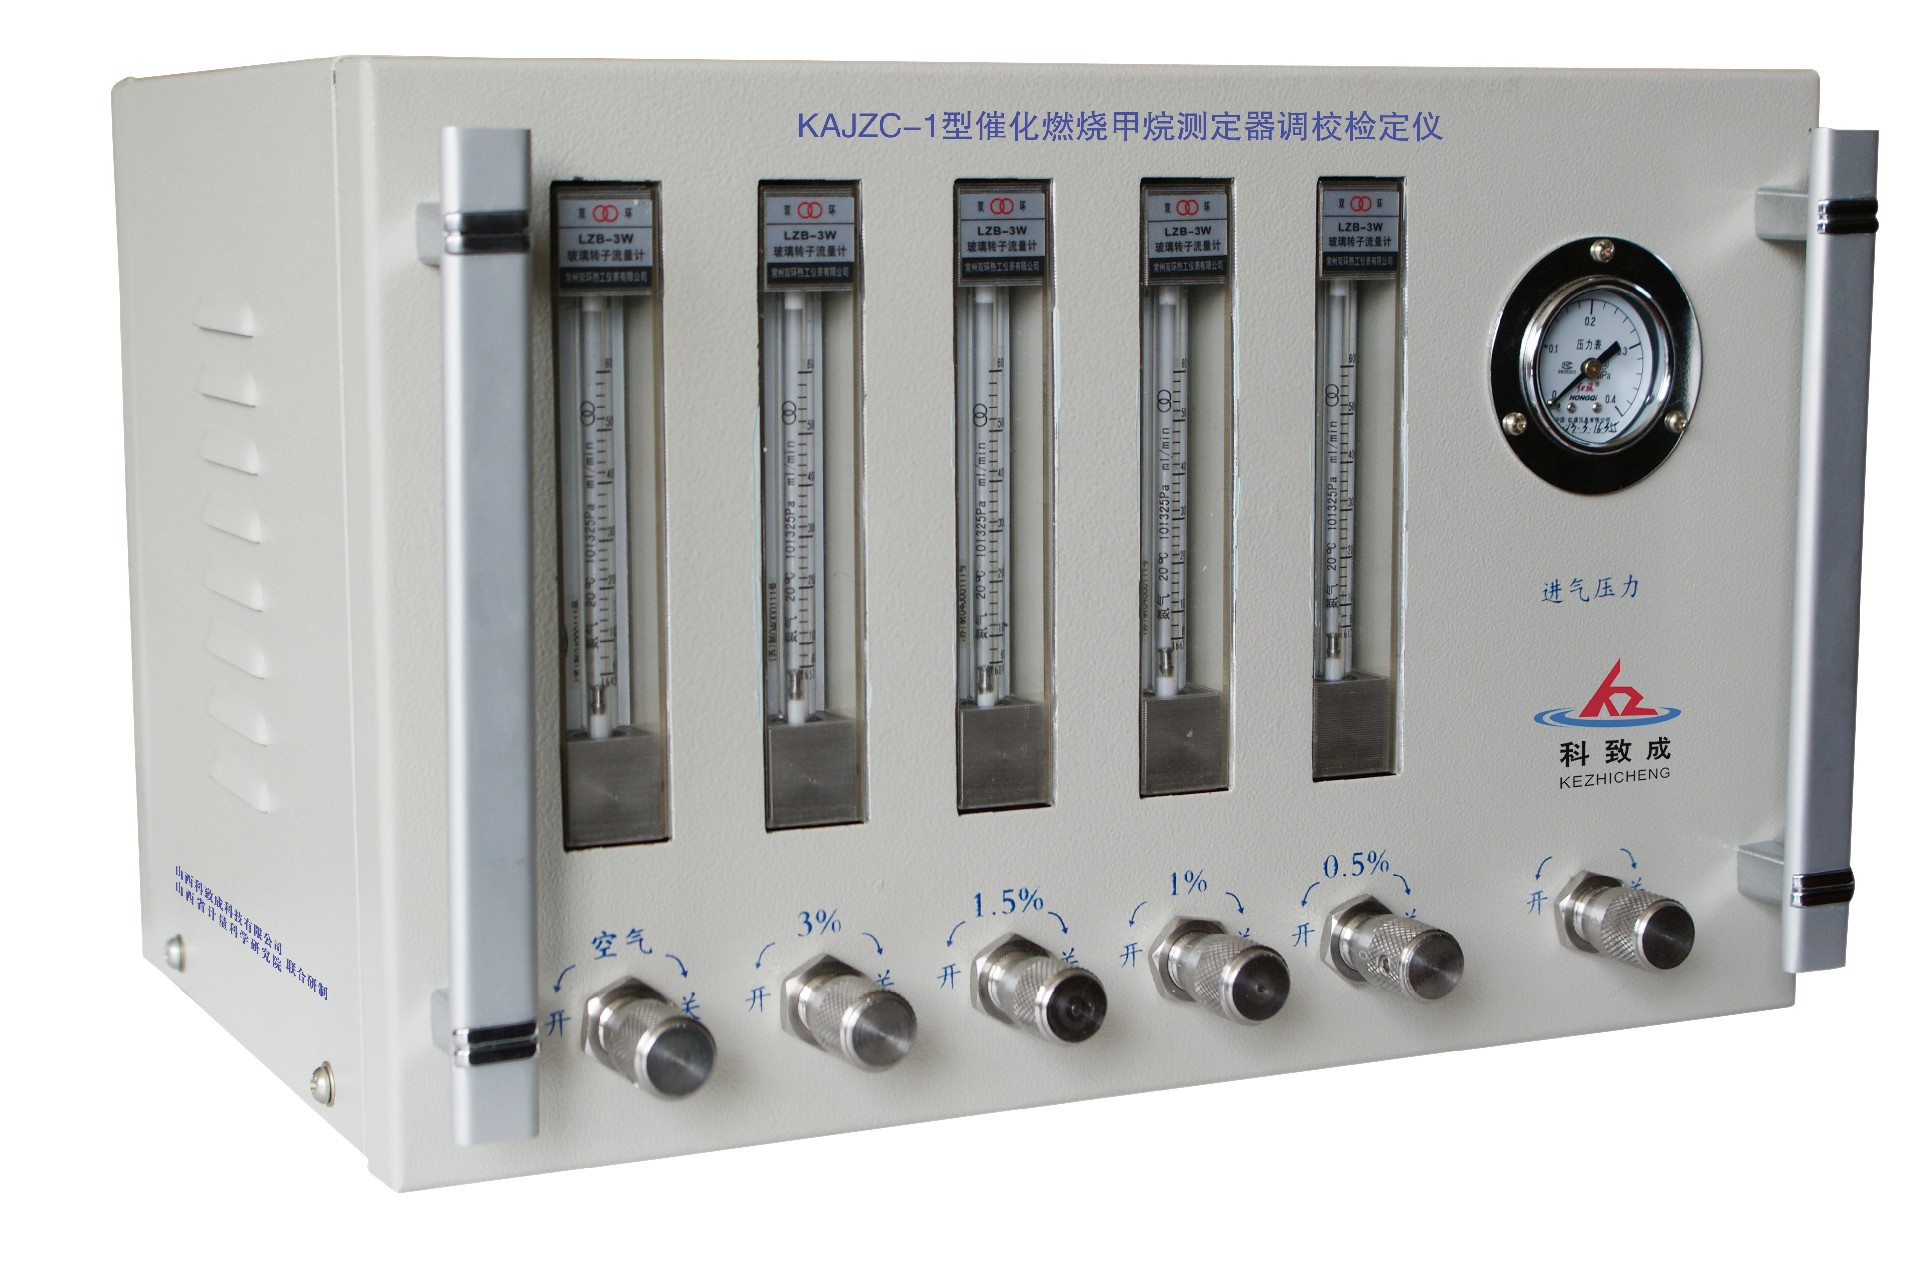 三门峡KAJZC-1型催化燃烧甲烷测定器调校检定仪